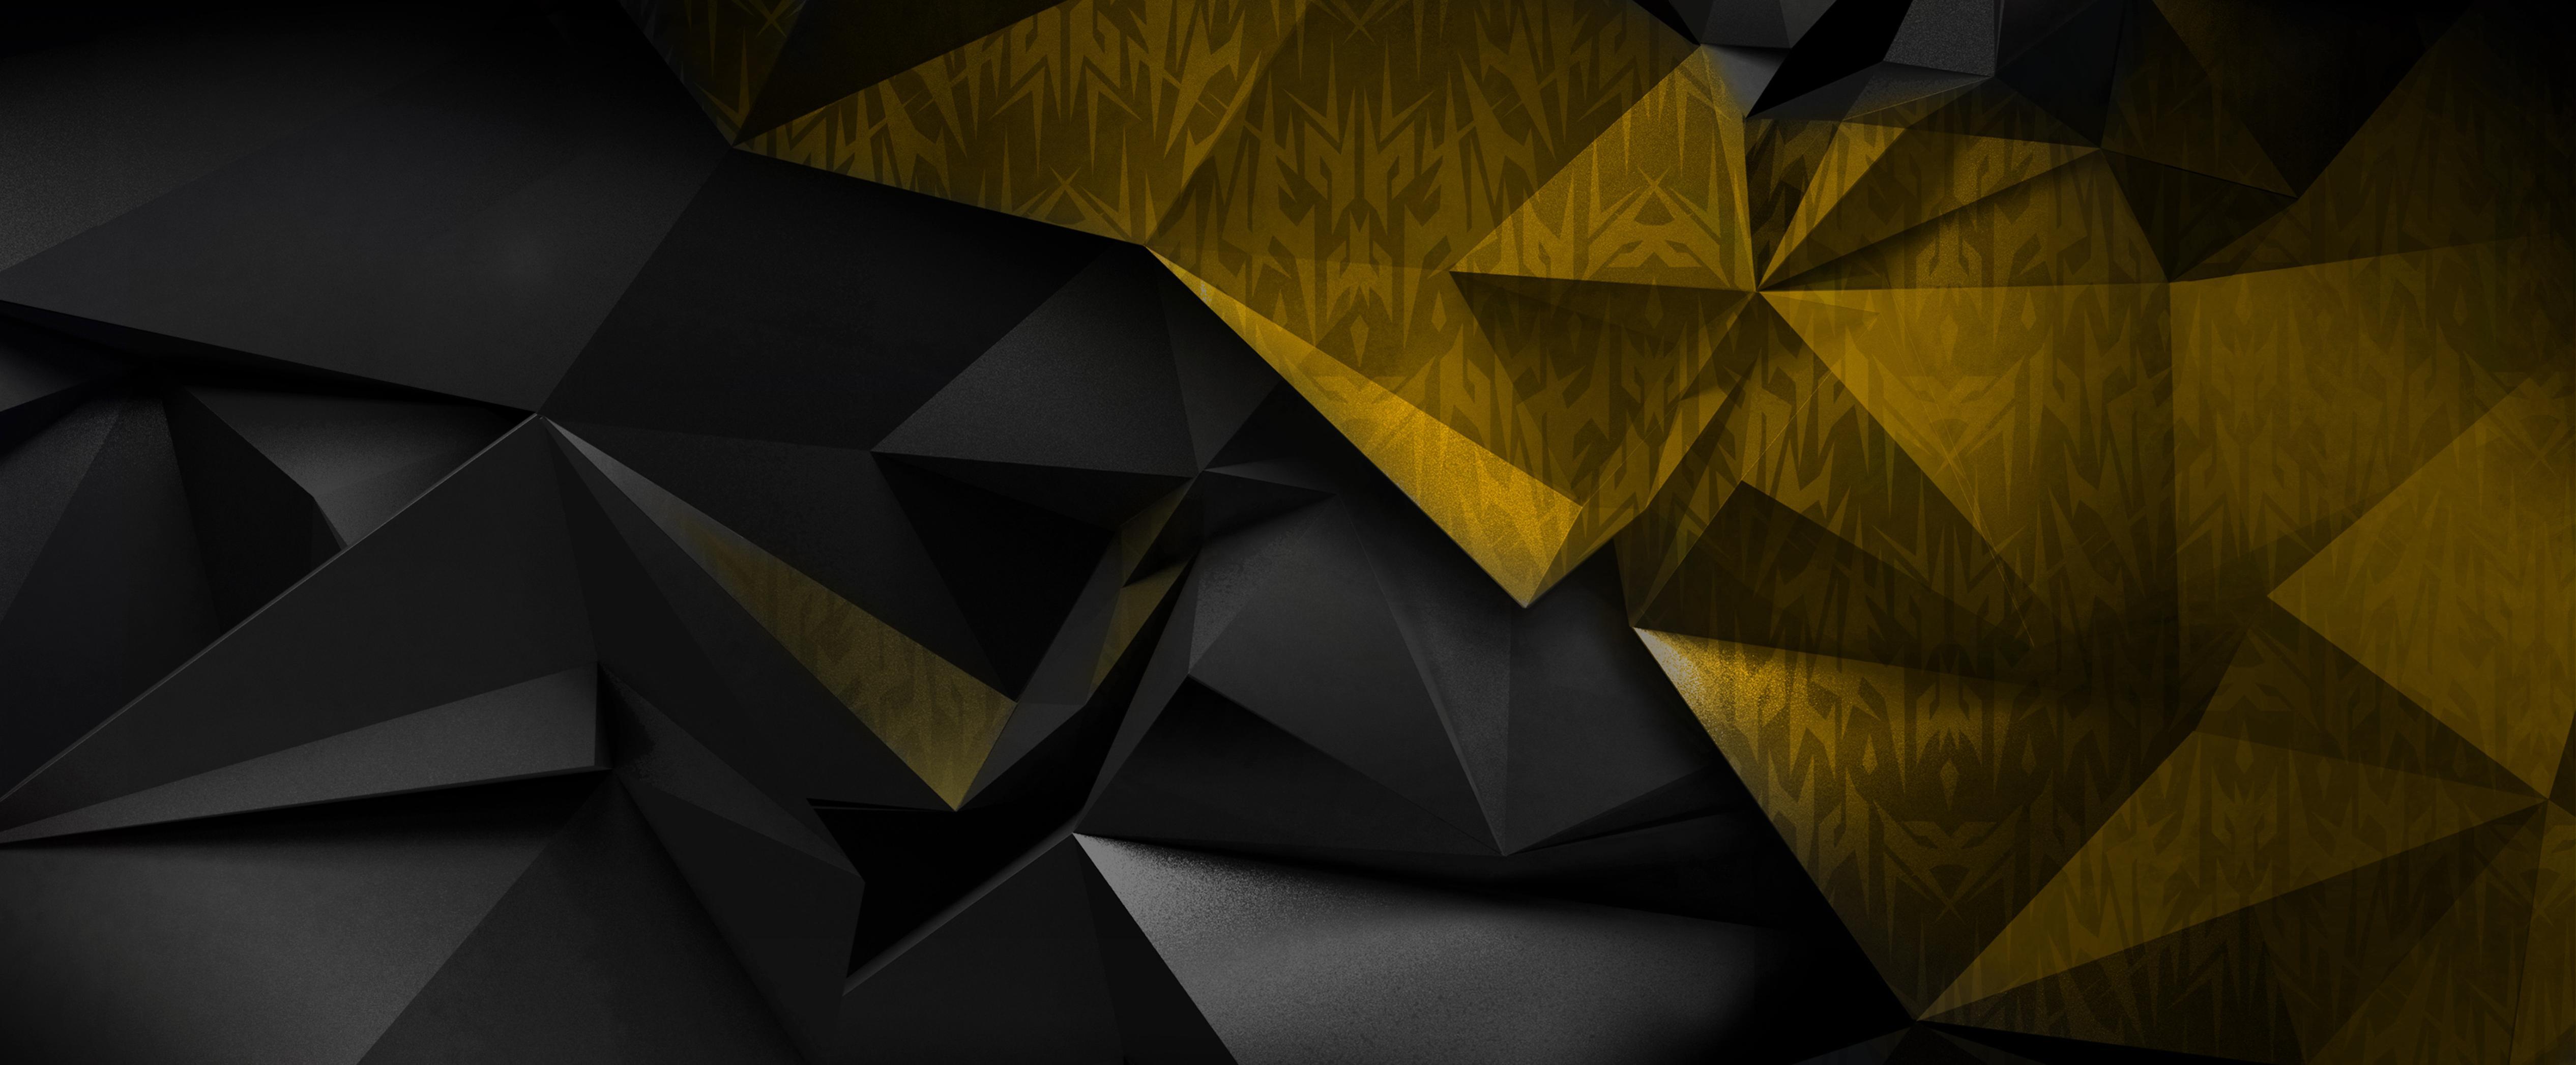 Hình nền đen và vàng: Sự kết hợp hoàn hảo giữa đen và vàng tạo nên một bức tranh nền đầy ấn tượng và sang trọng. Hãy đắm chìm trong vẻ đẹp của bức tranh nền vàng đen và truyền cảm hứng cho công việc của bạn.